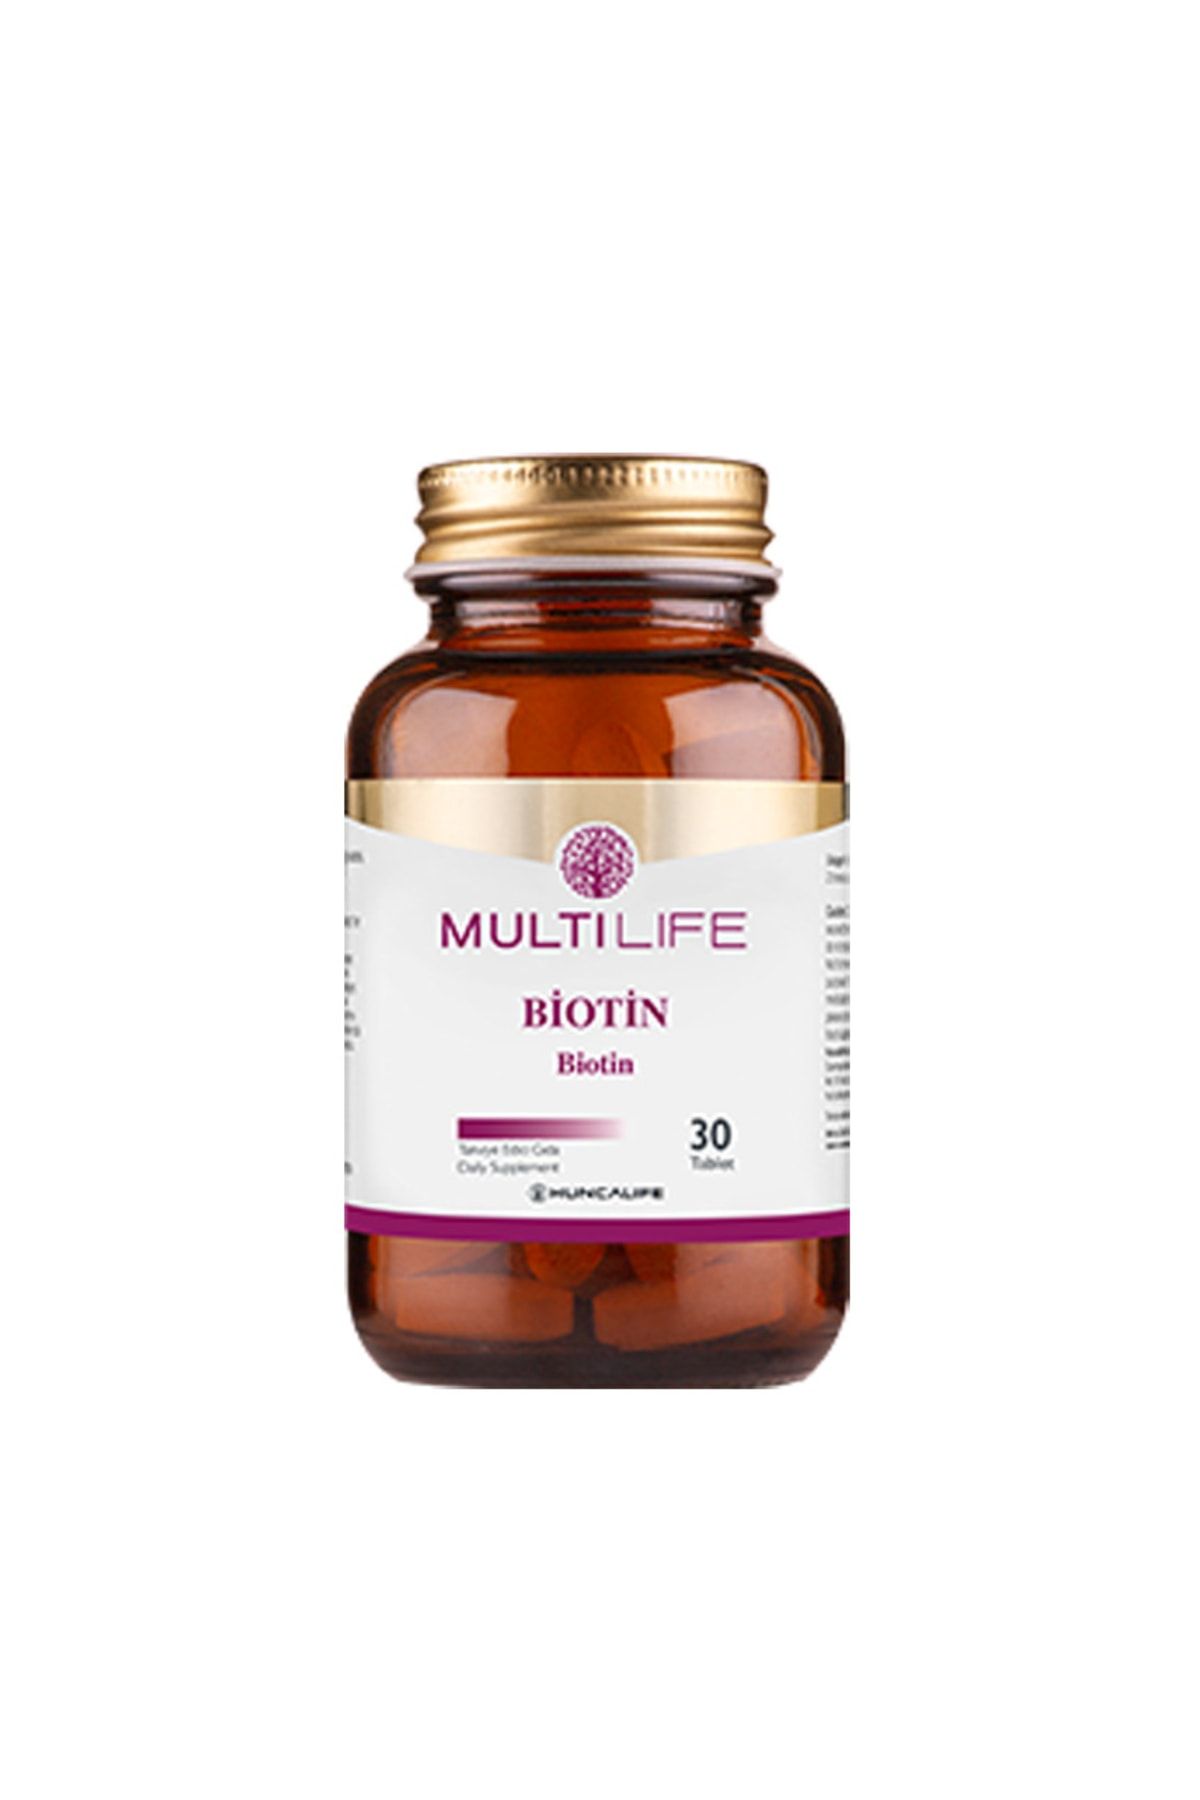 Huncalife Multilife Biotin Içeren Takviye Edici Gıda 30 Tablet